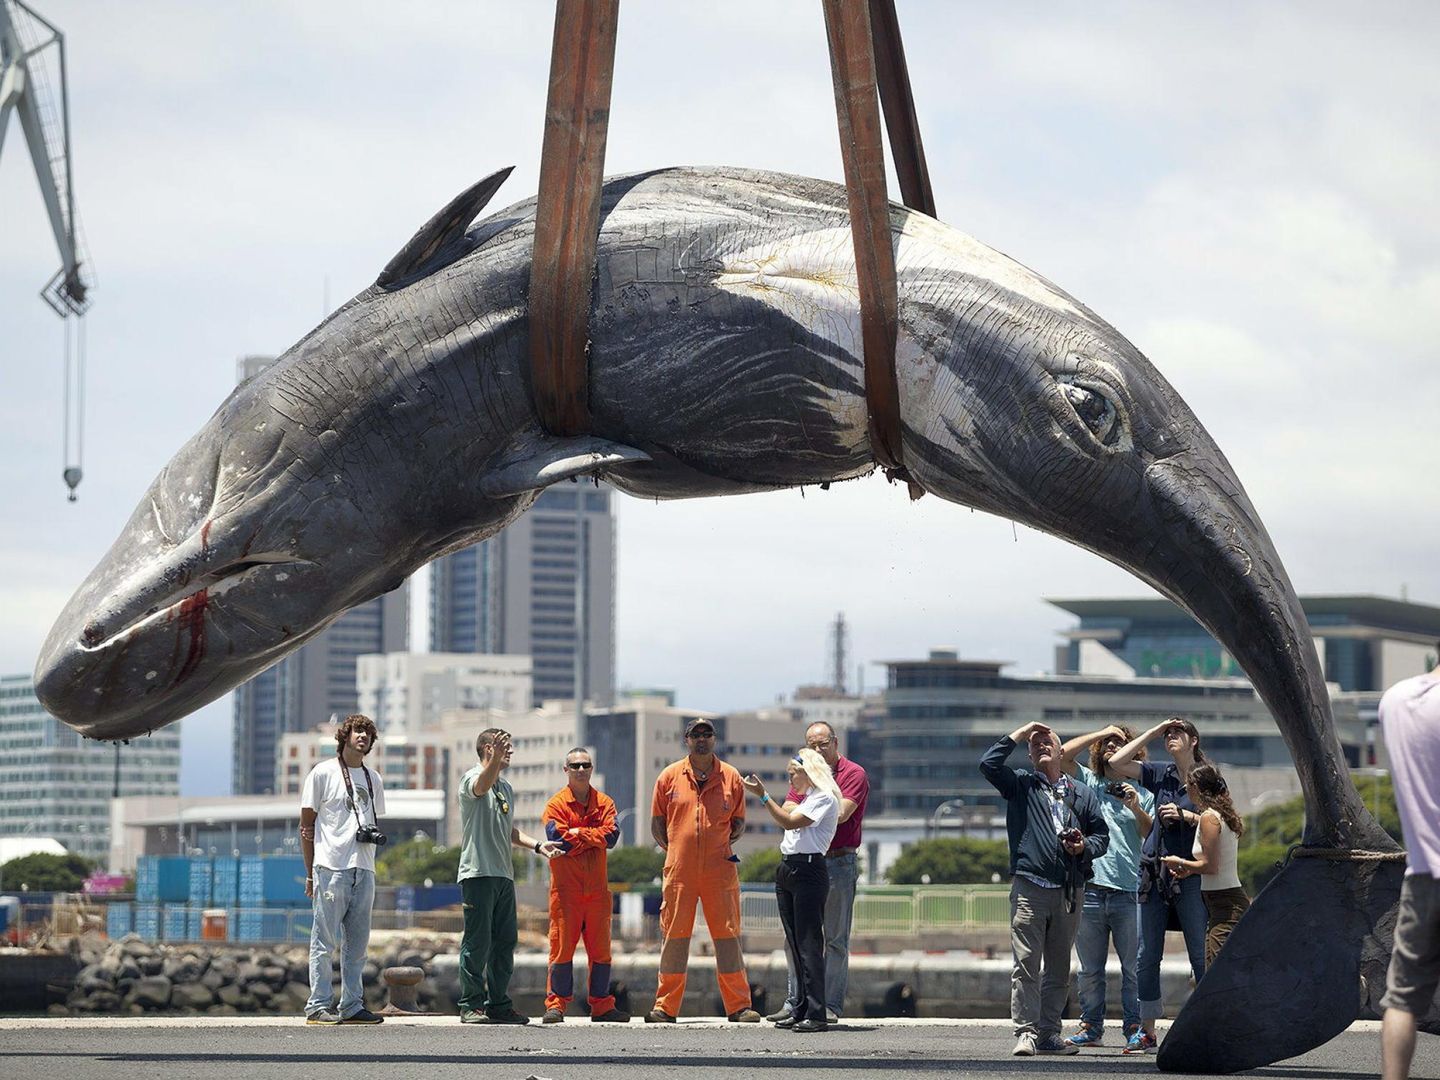 Un cachalote hembra de unos 10 metros de largo y unas 9 toneladas de peso fue encontrado muerto en la bahía de Santa Cruz de Tenerife (EFE)